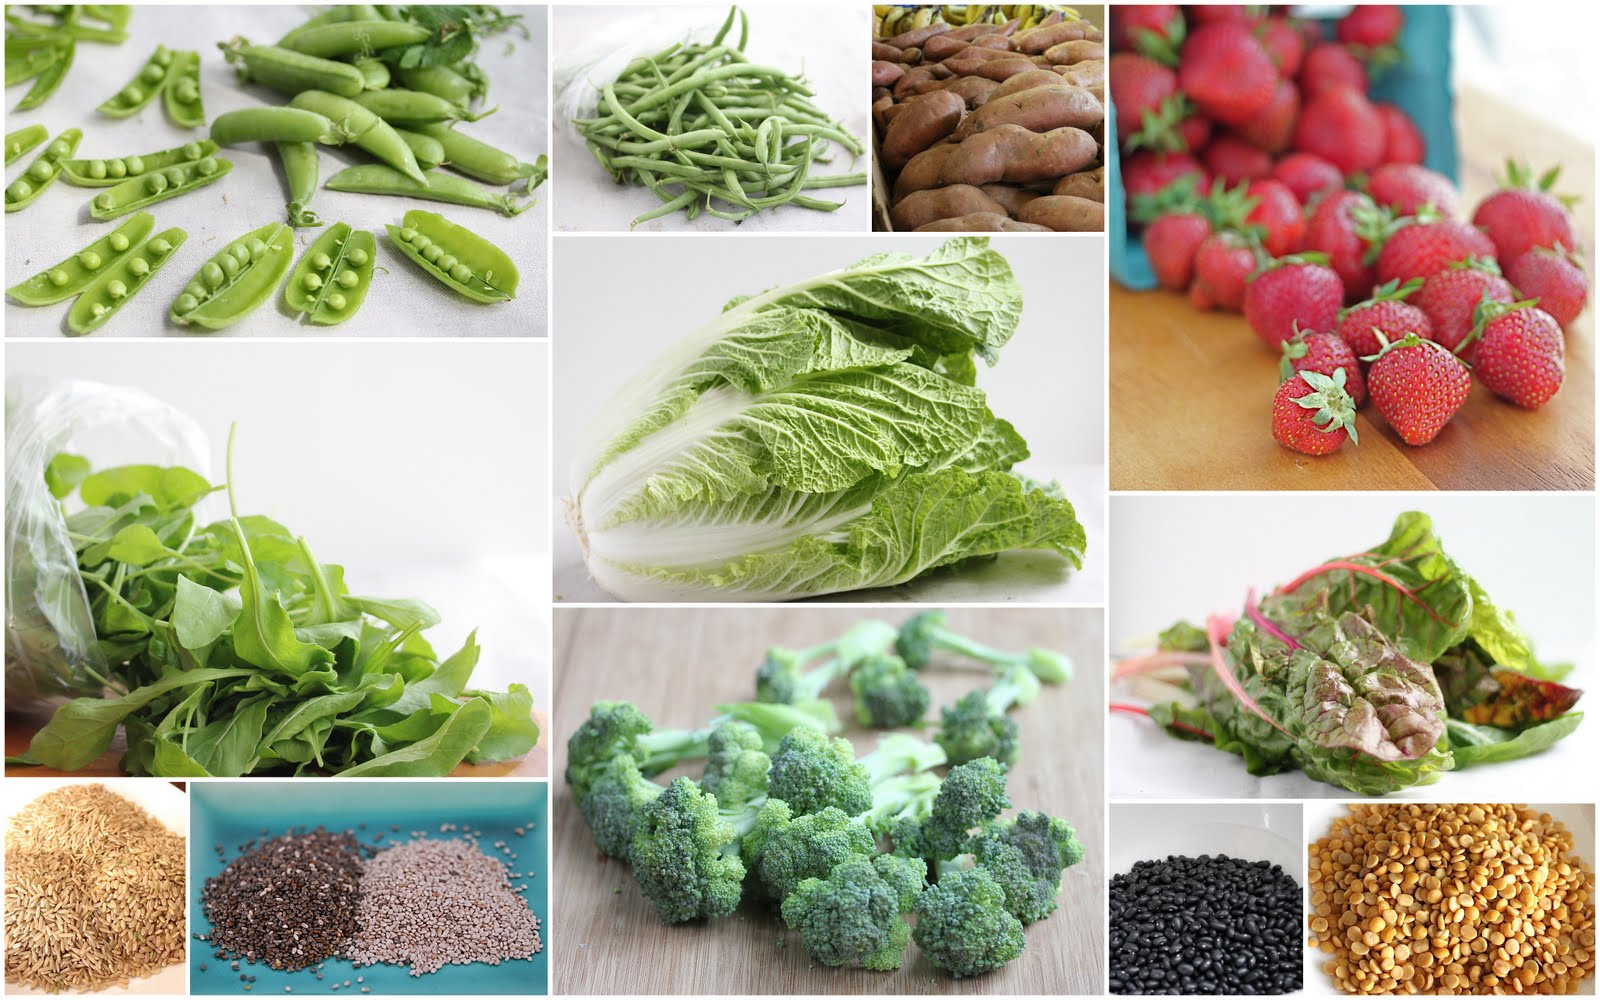 Диабет клубника можно. Диабет овощи. Диетотерапия сахарного диабета. Полезная зелень. Овощи от сахарного диабета.